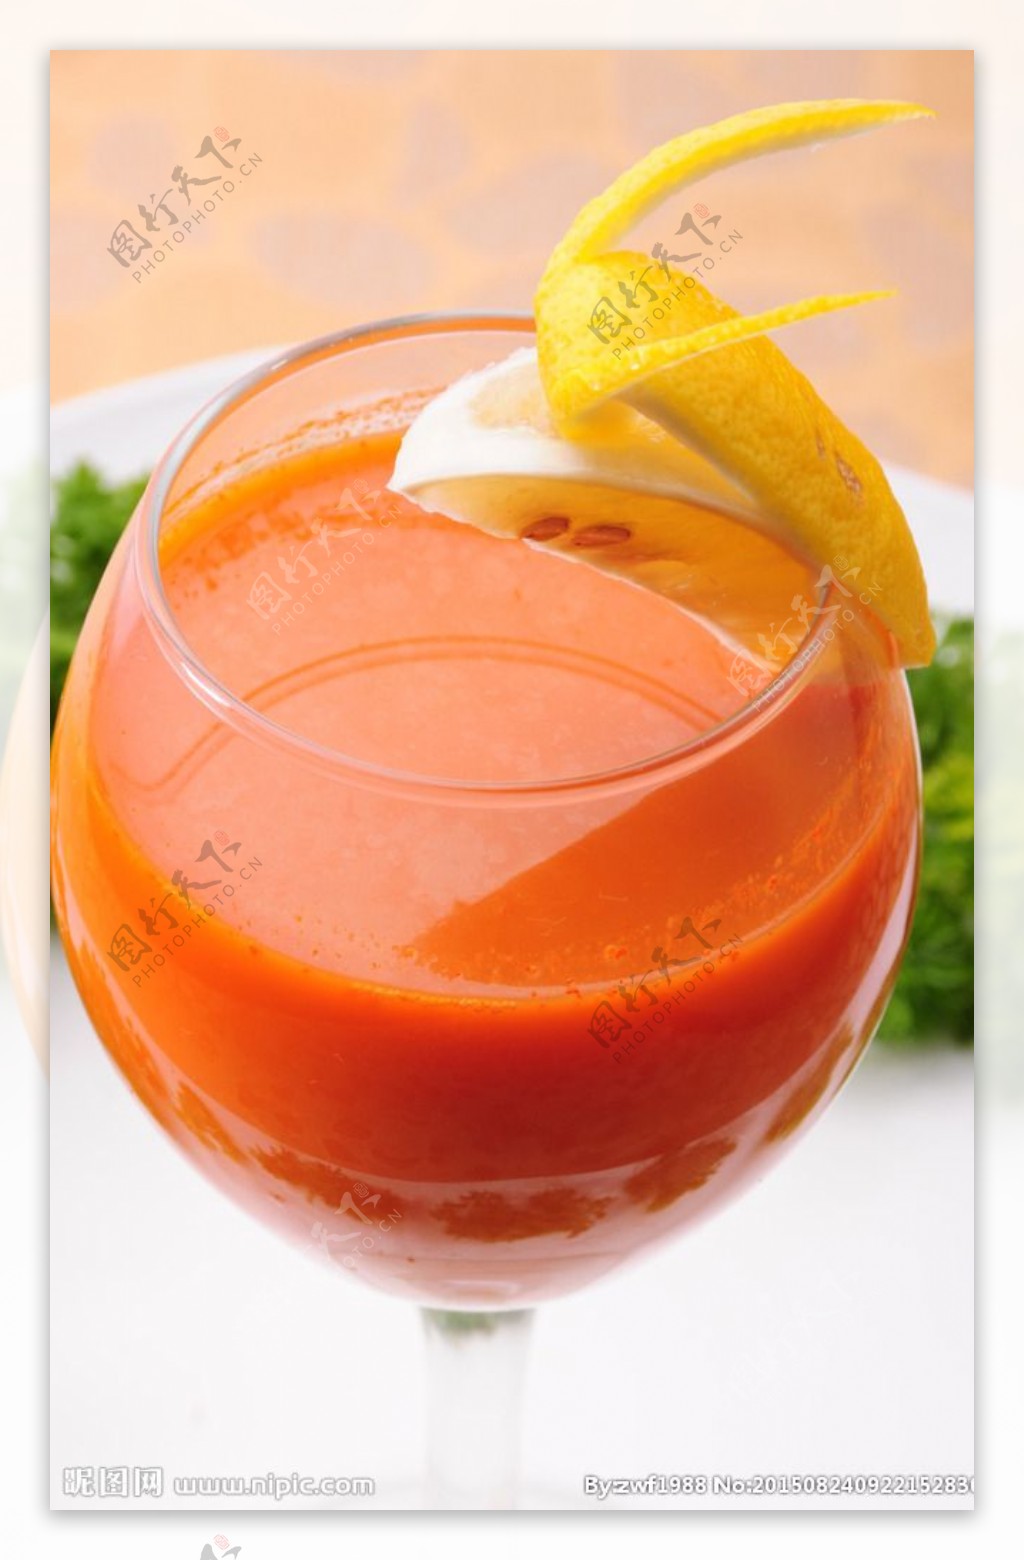 杯胡萝卜汁和新鲜胡萝卜放在一块木板图片下载 - 觅知网